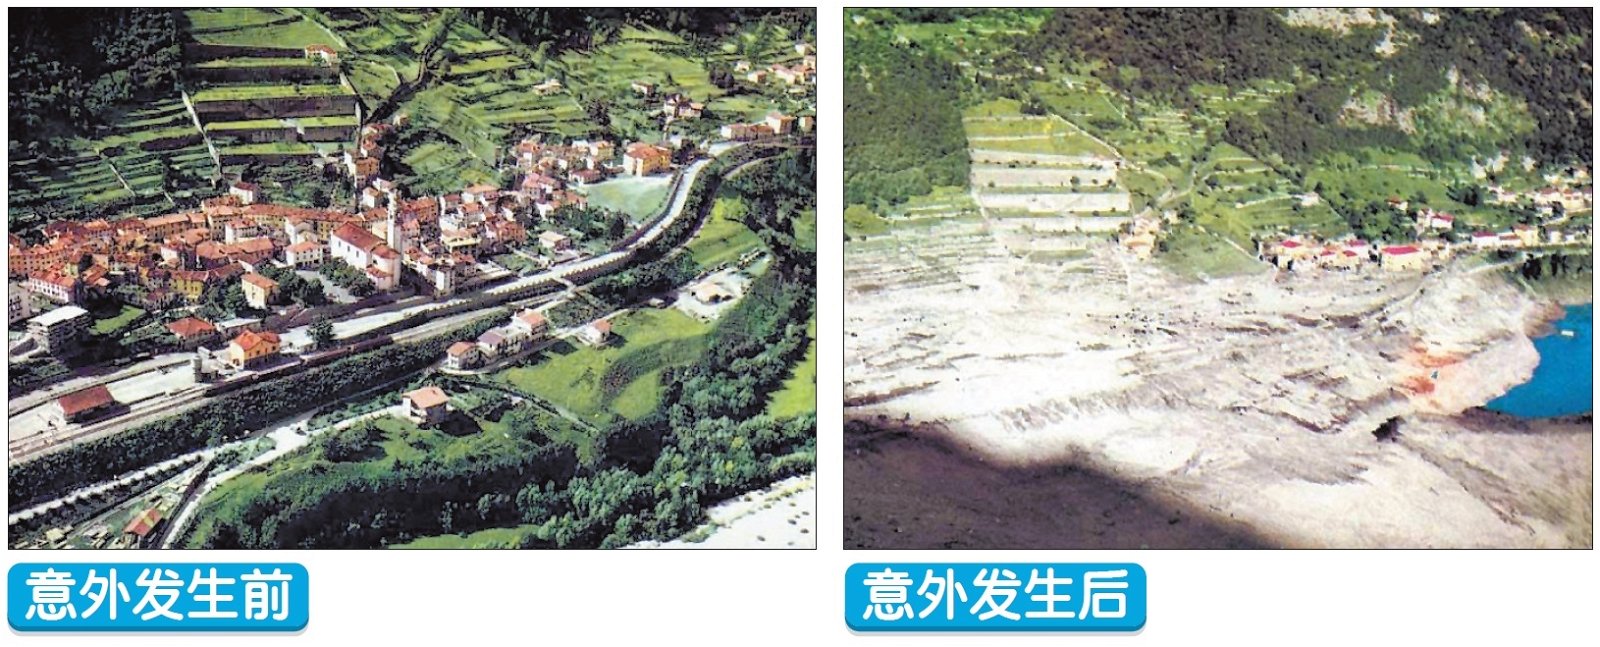 意大利北部一个叫做朗格隆尼的小镇，因为水坝意外被夷为平地，镇上超过八成人口在睡梦中死于非命。